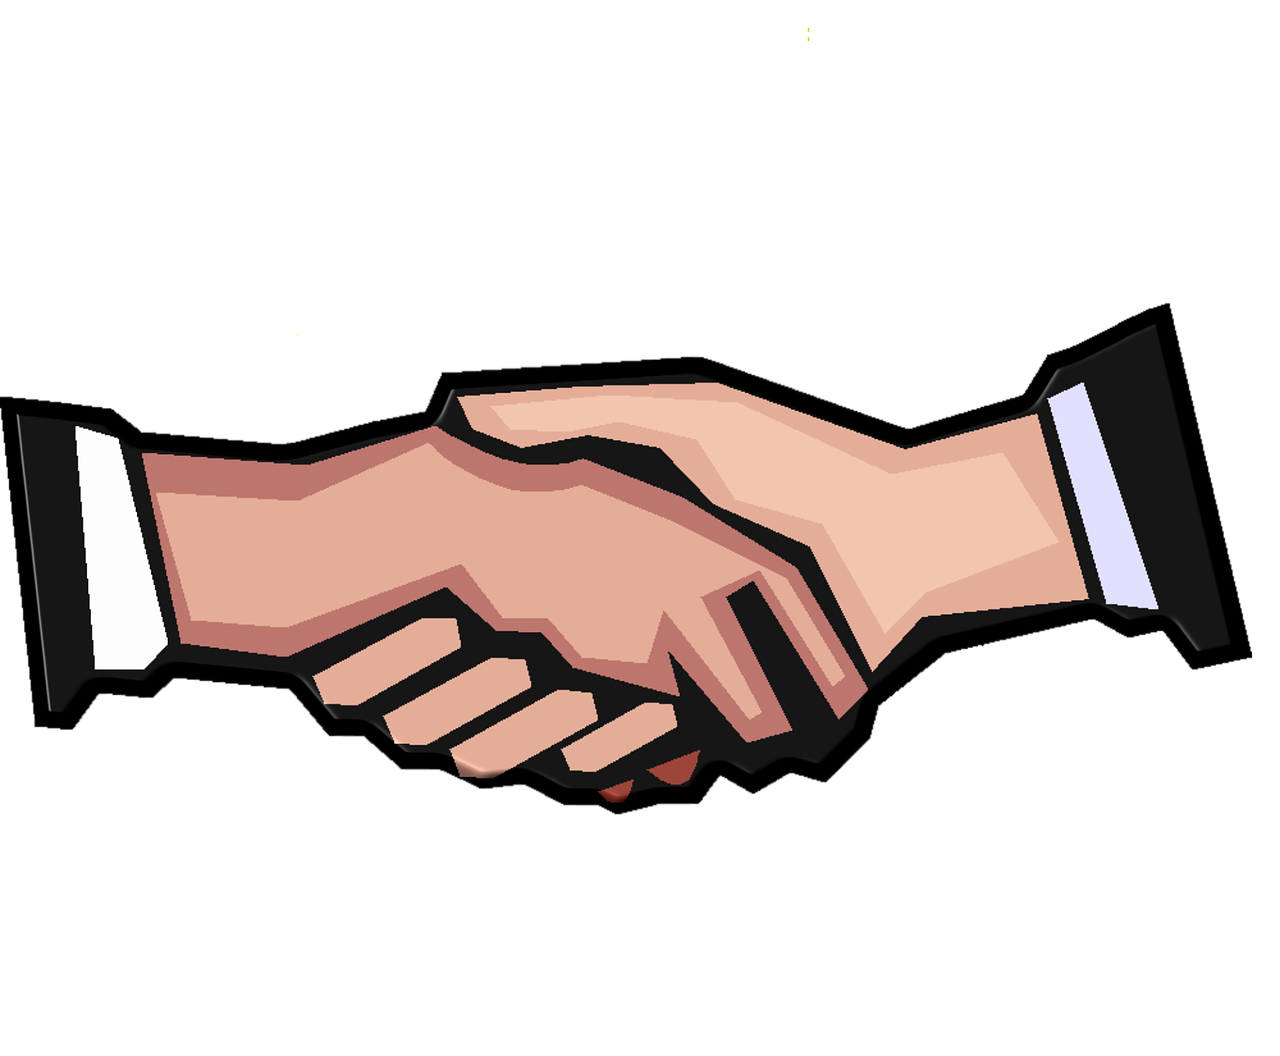 Merger Handshake